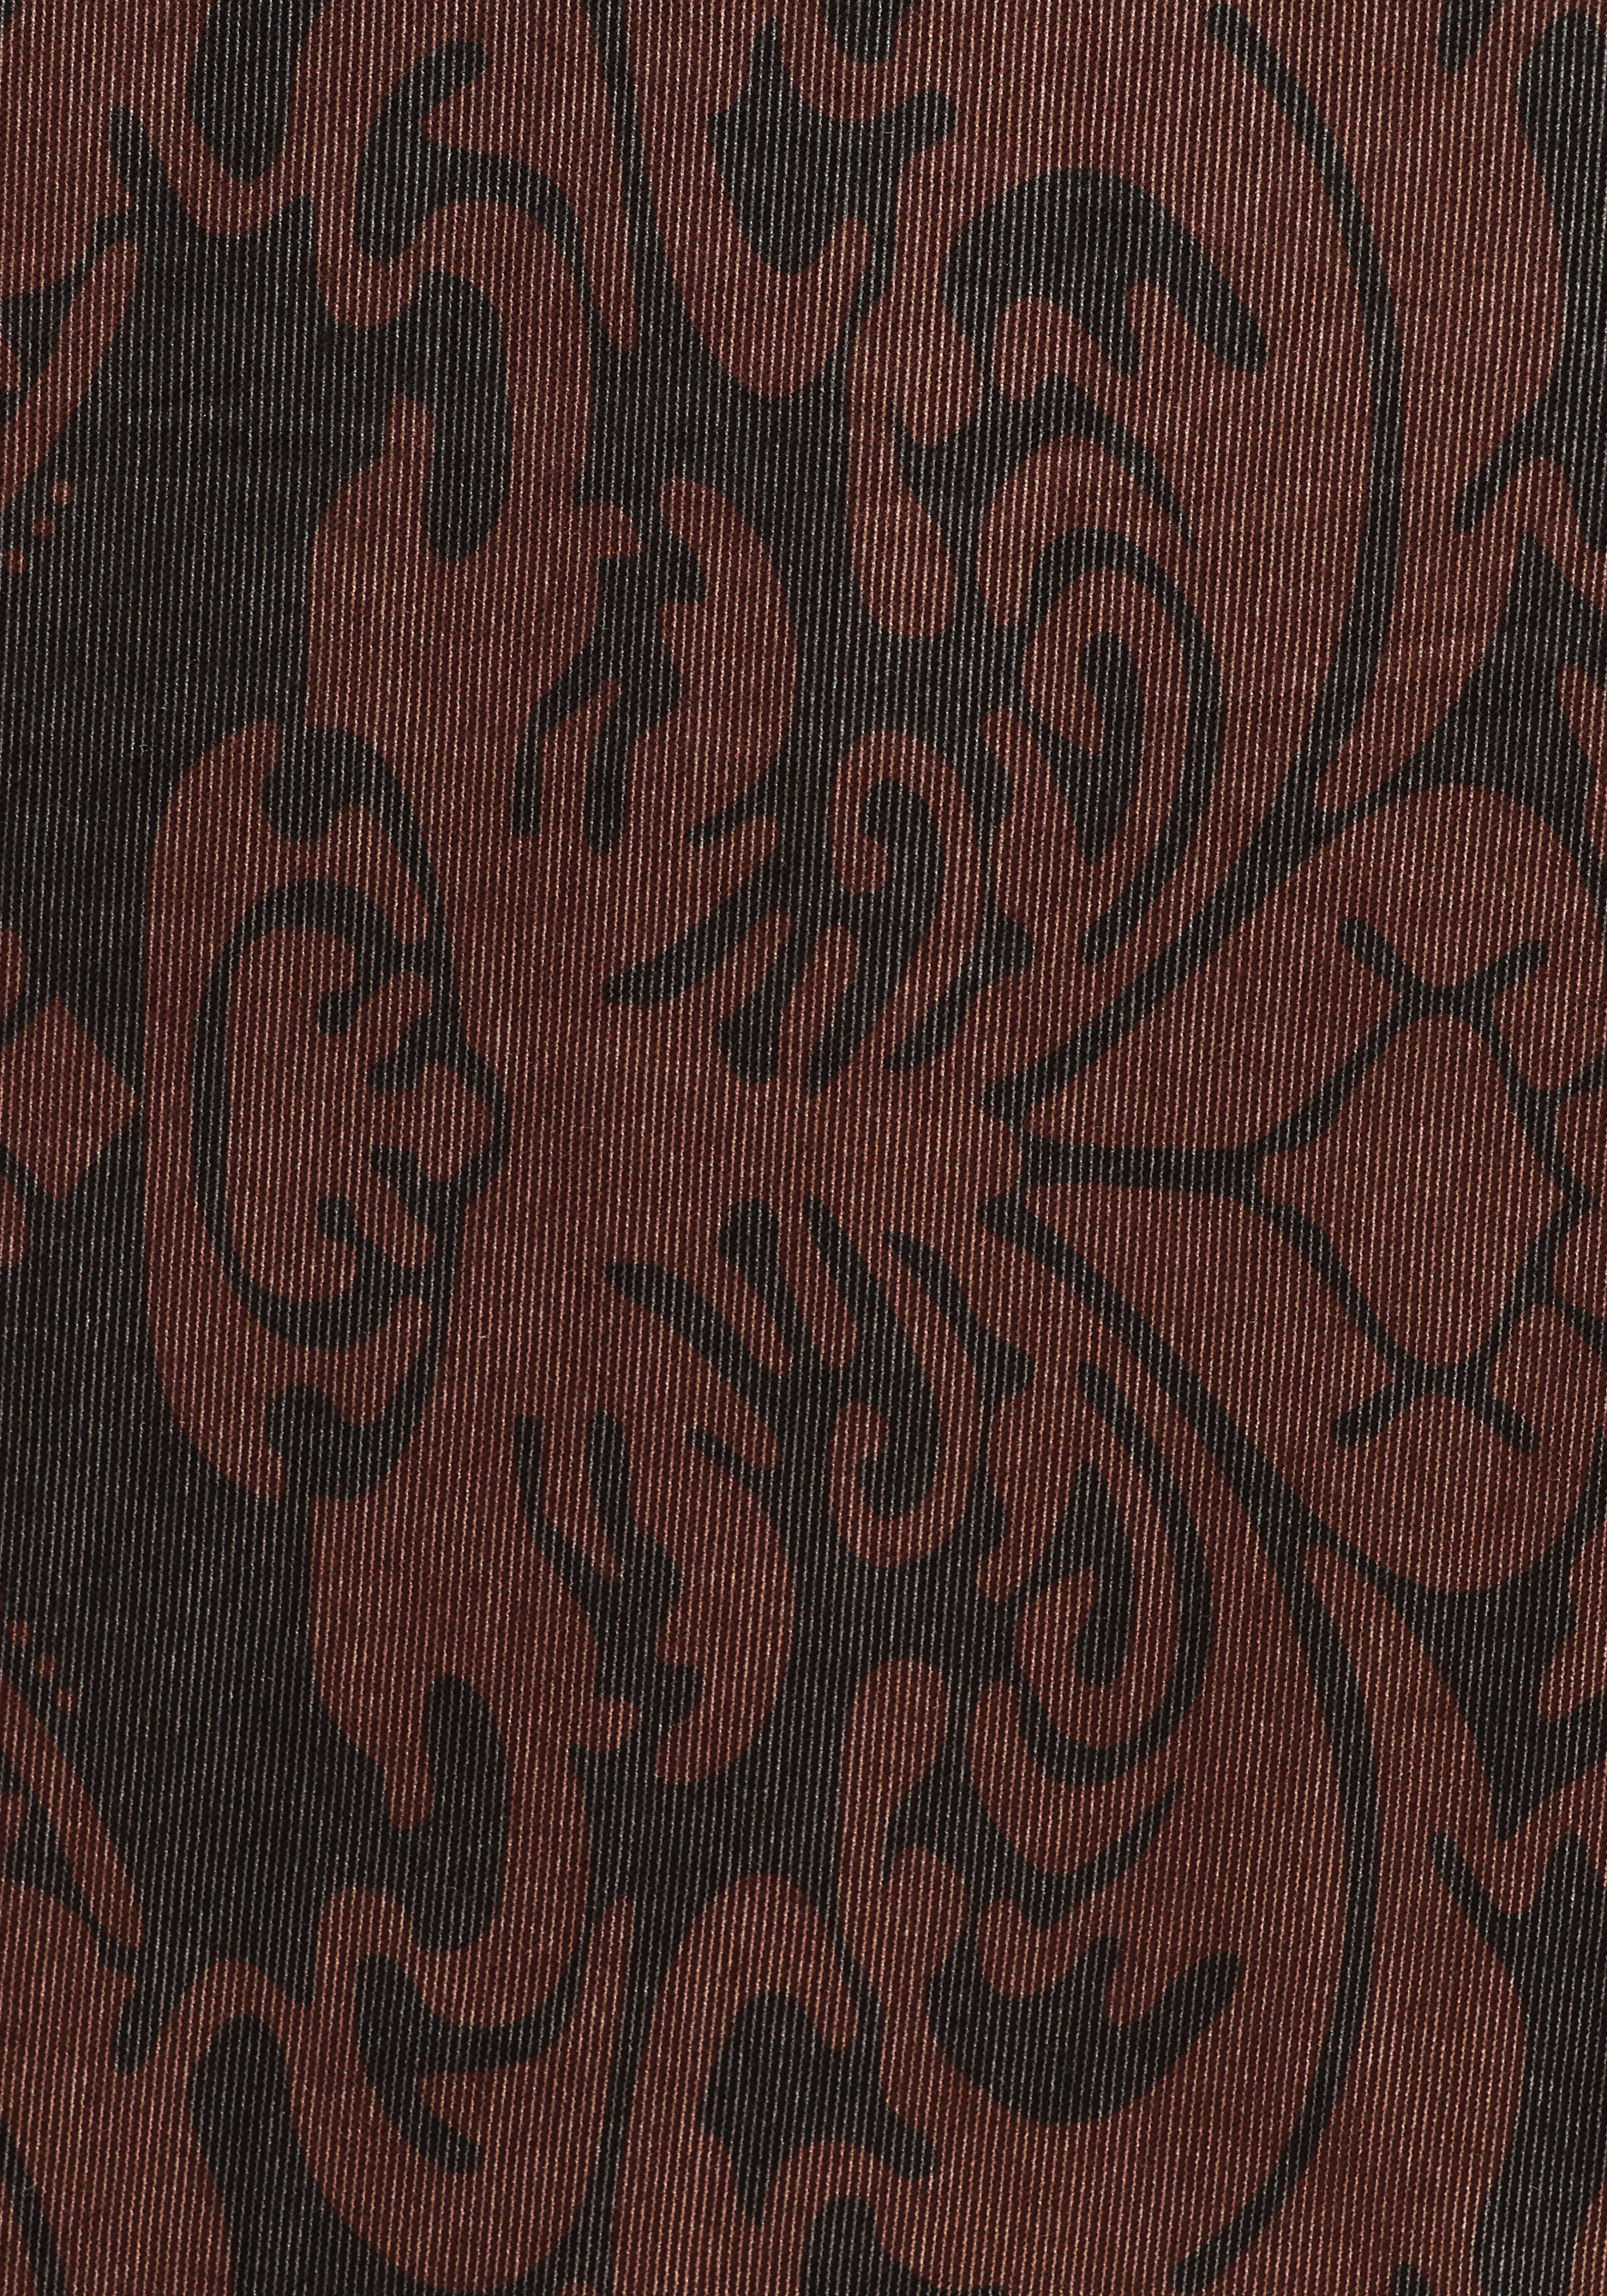 Чехол для стула "Кармен", 2 шт. Марианна, цвет коричневый, размер 60 - фото 7